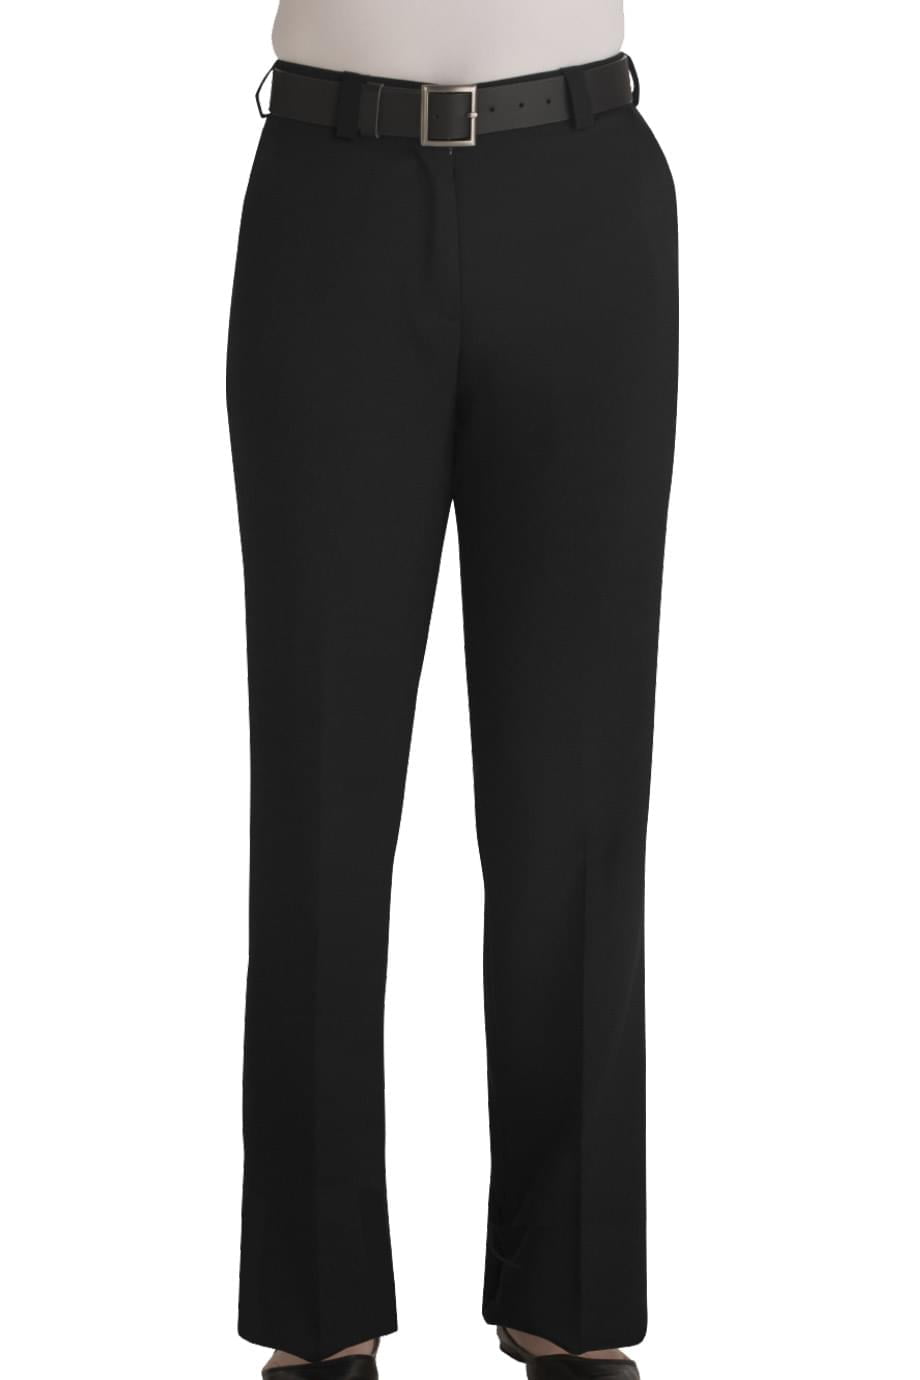 Black 4 UR Ed Garments Women's Classic Fit Flat Front Security Pant 